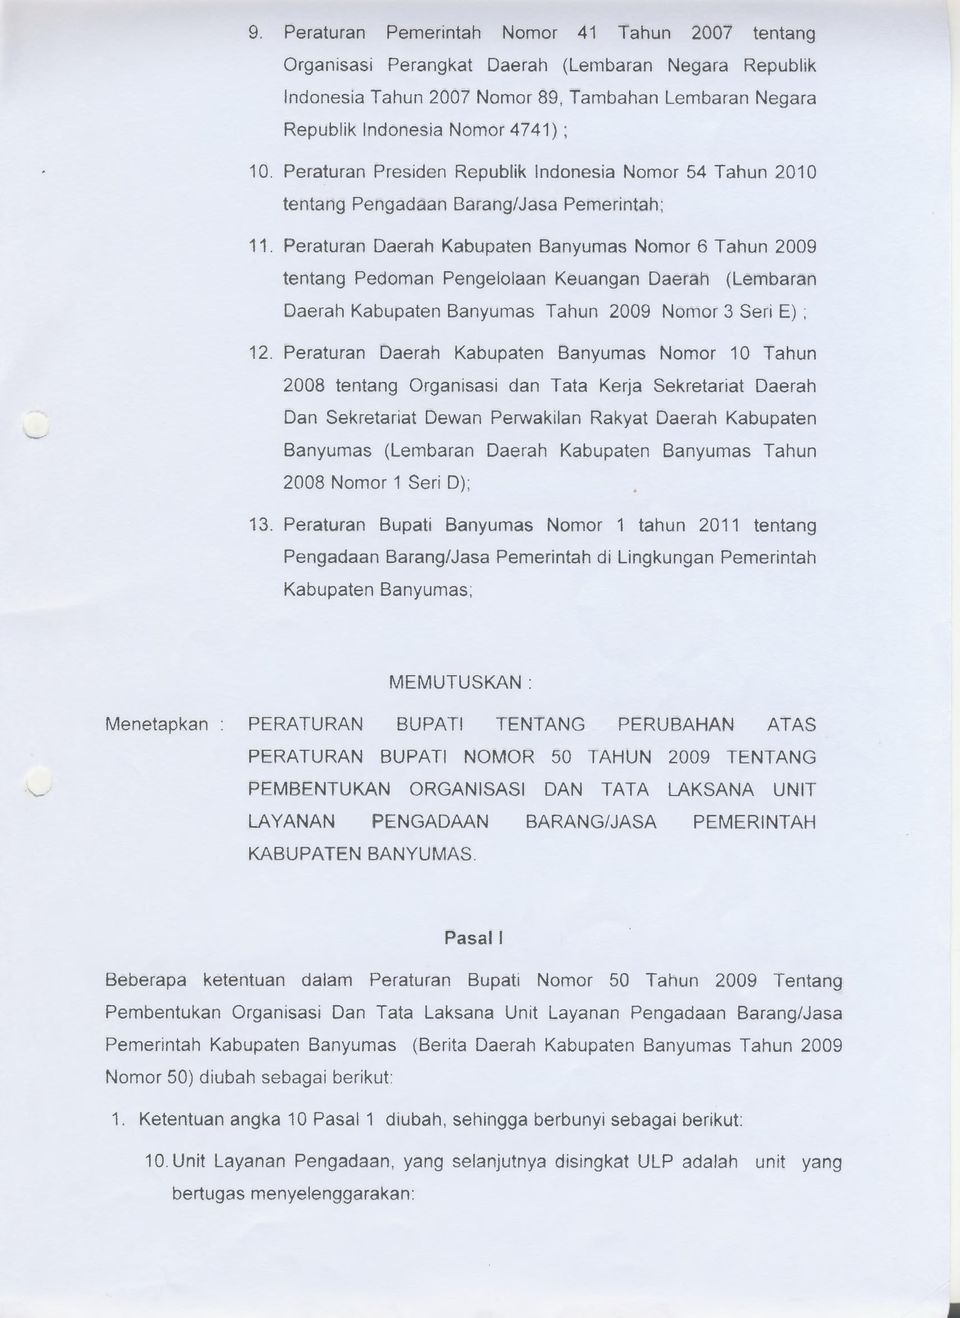 Peraturan Daerah Kabupaten Banyumas Nomor 6 Tahun 2009 tentang Pedoman Pengelolaan Keuangan Daerah (Lembaran Daerah Kabupaten Banyumas Tahun 2009 Nomor 3 Seri E) ; 12.